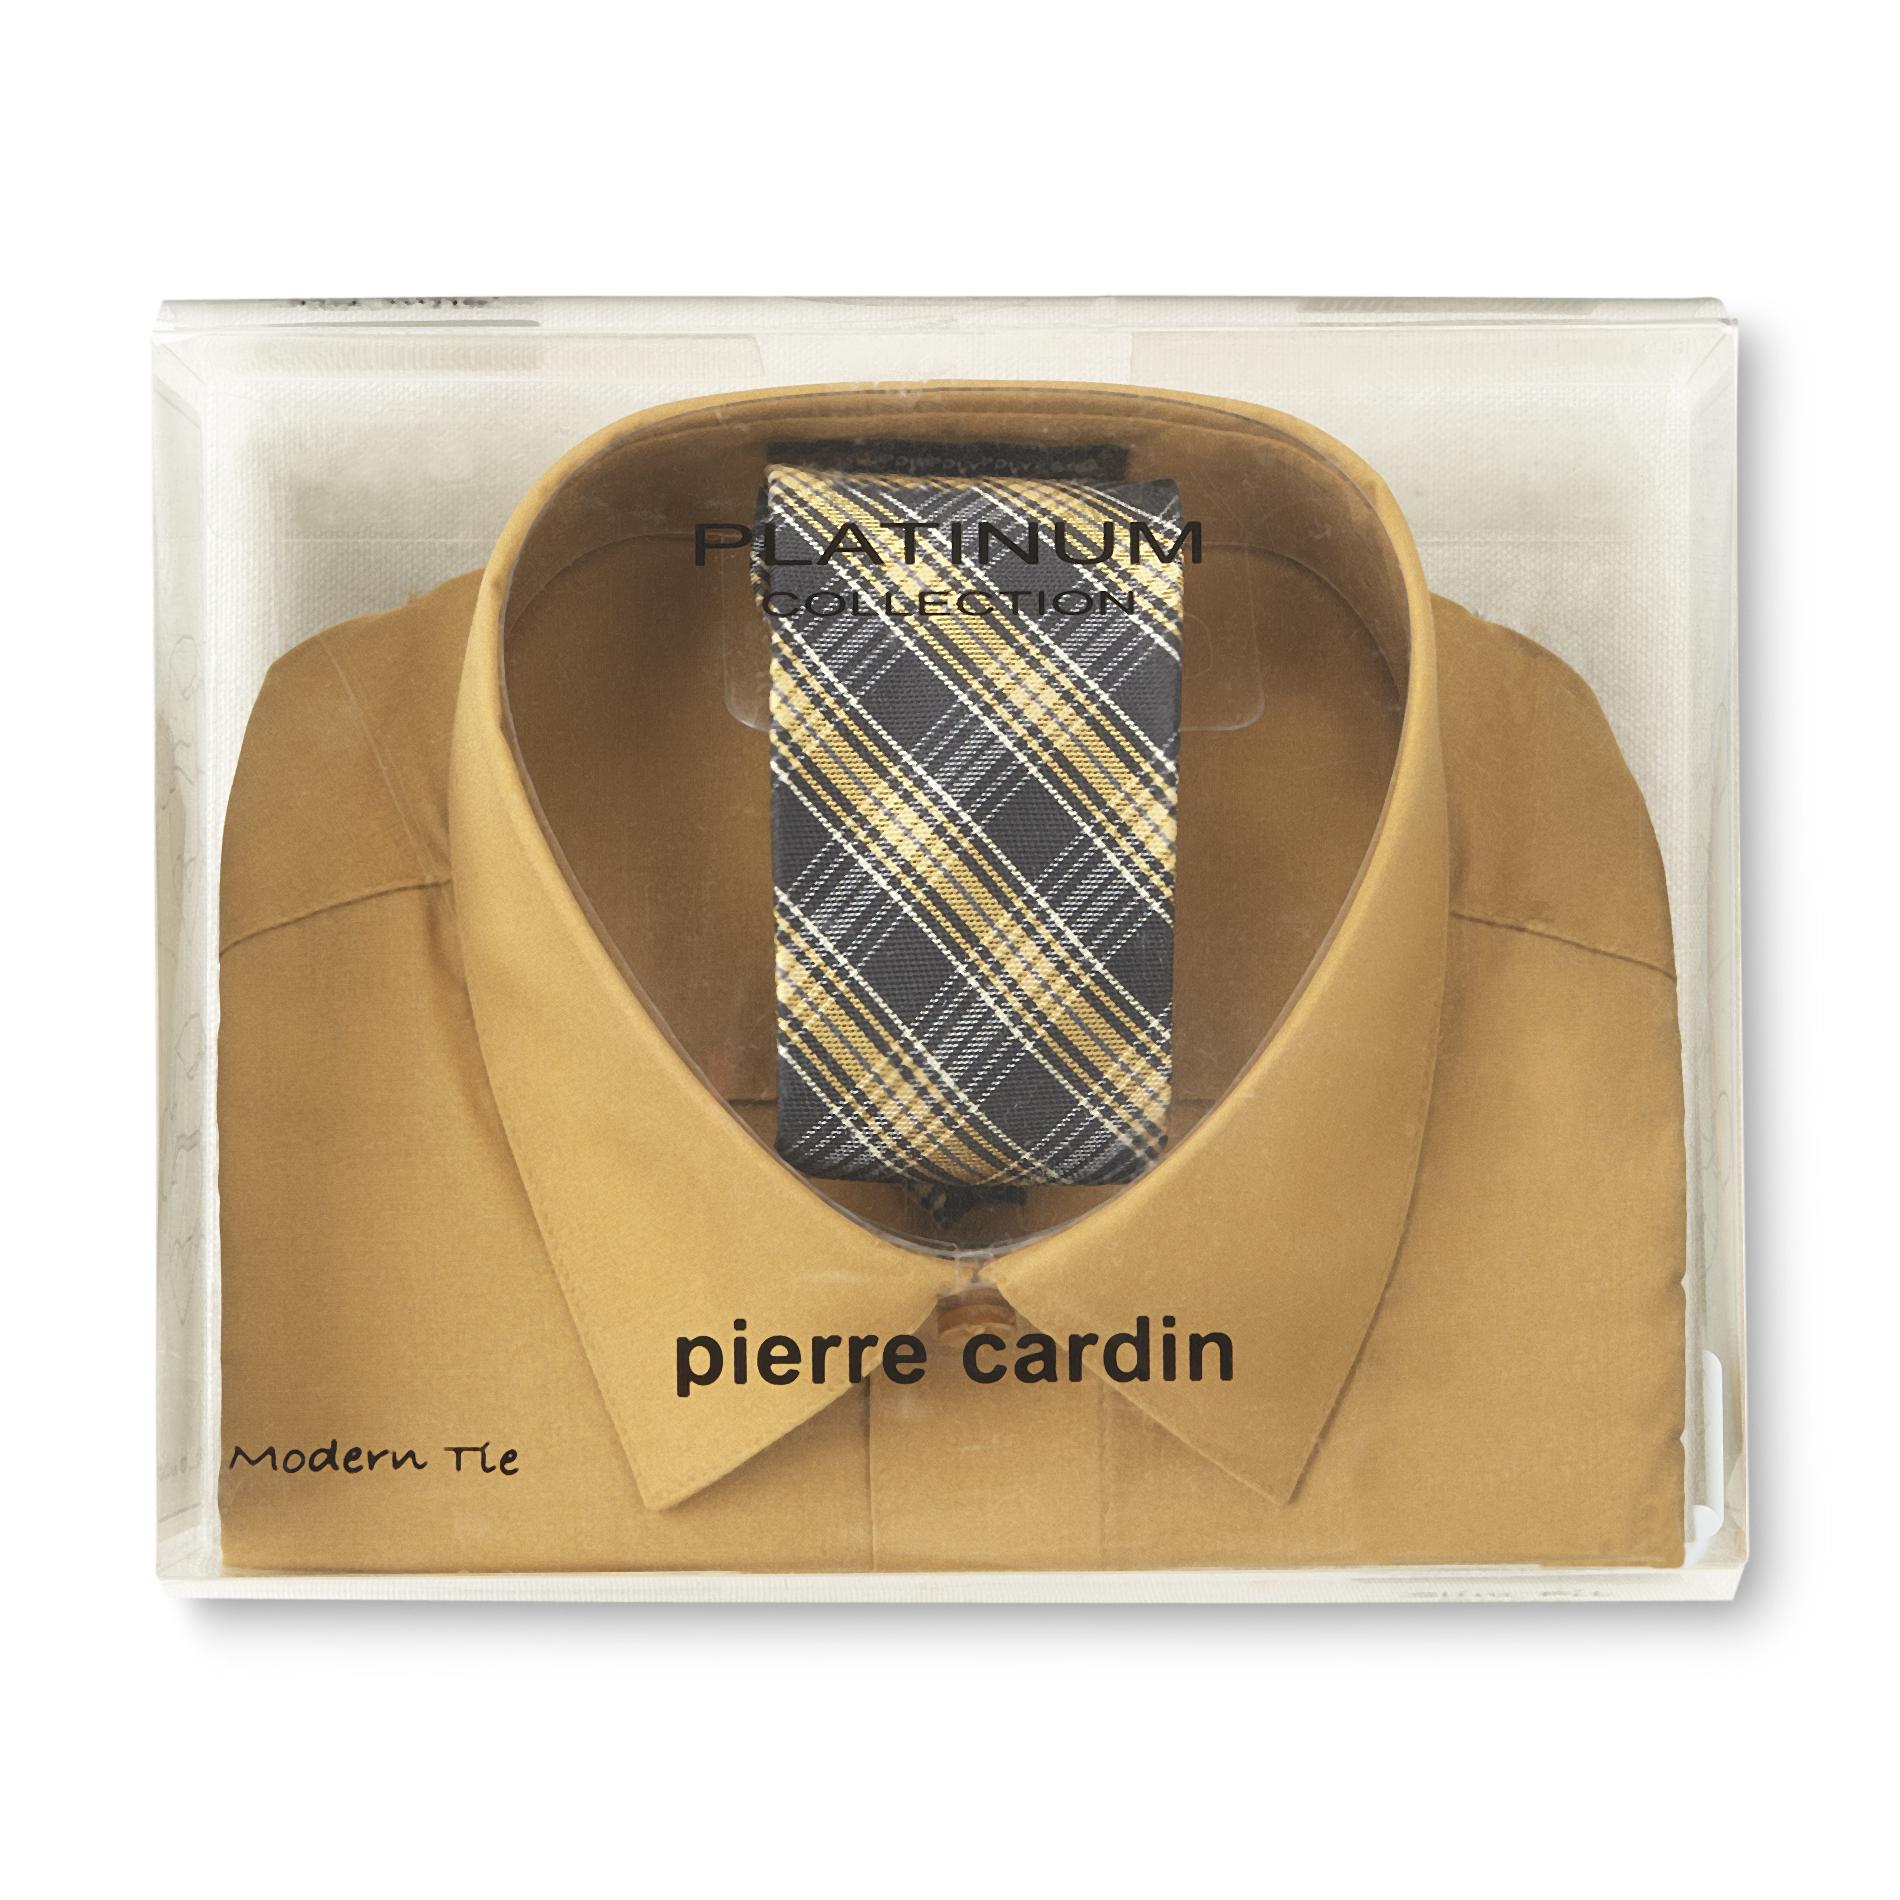 Pierre Cardin Men's Slim Fit Shirt & Tie - Plaid